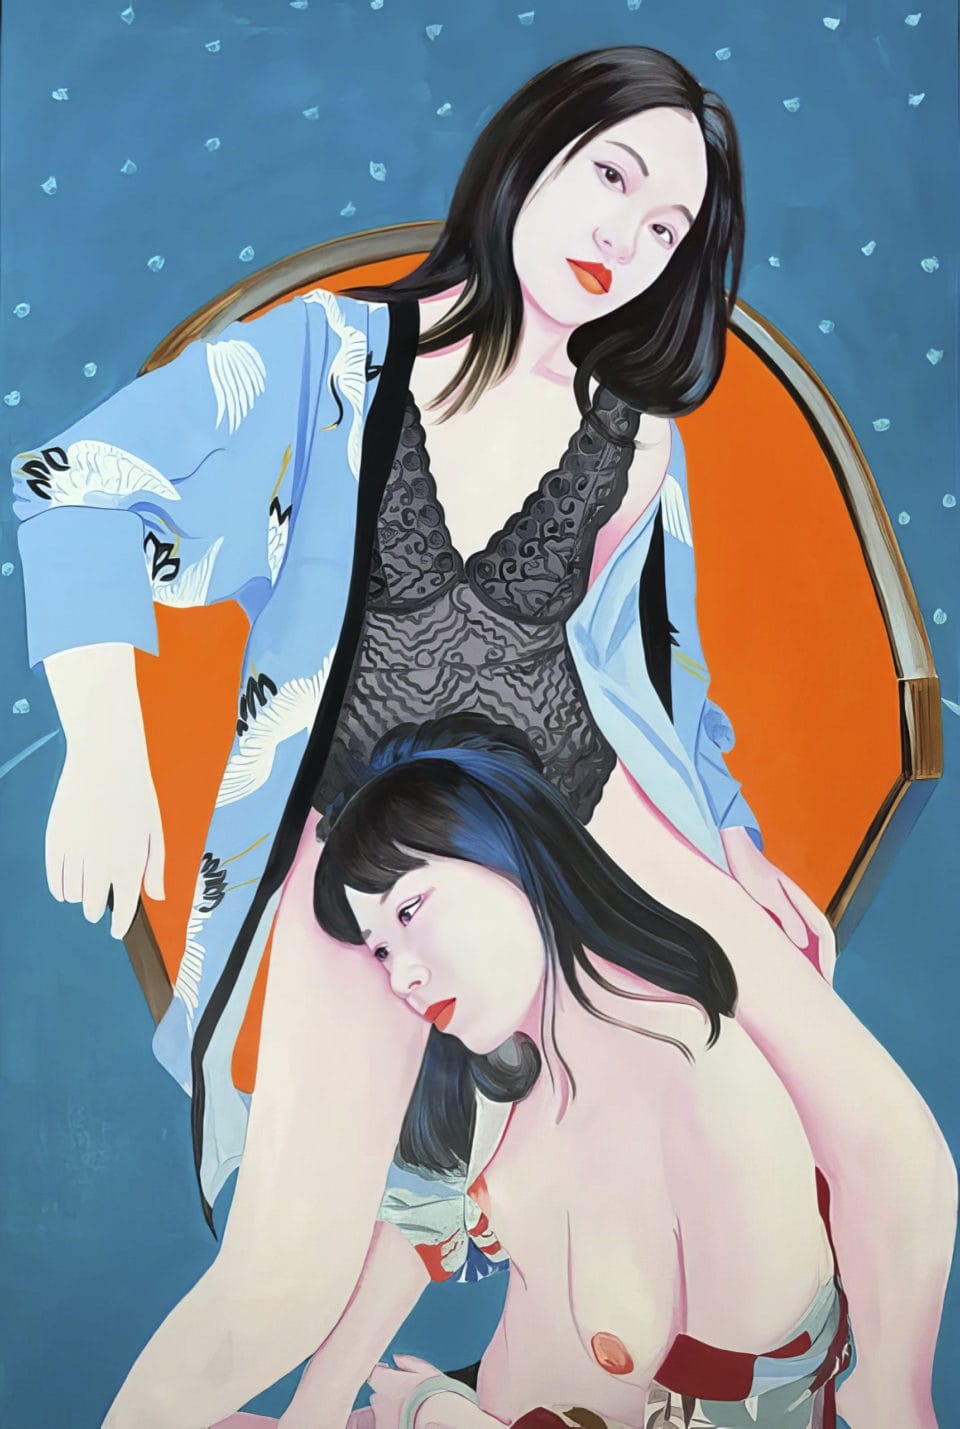 Ziqiu and Lisha huile sur toile oil on canvas 195x130 cm